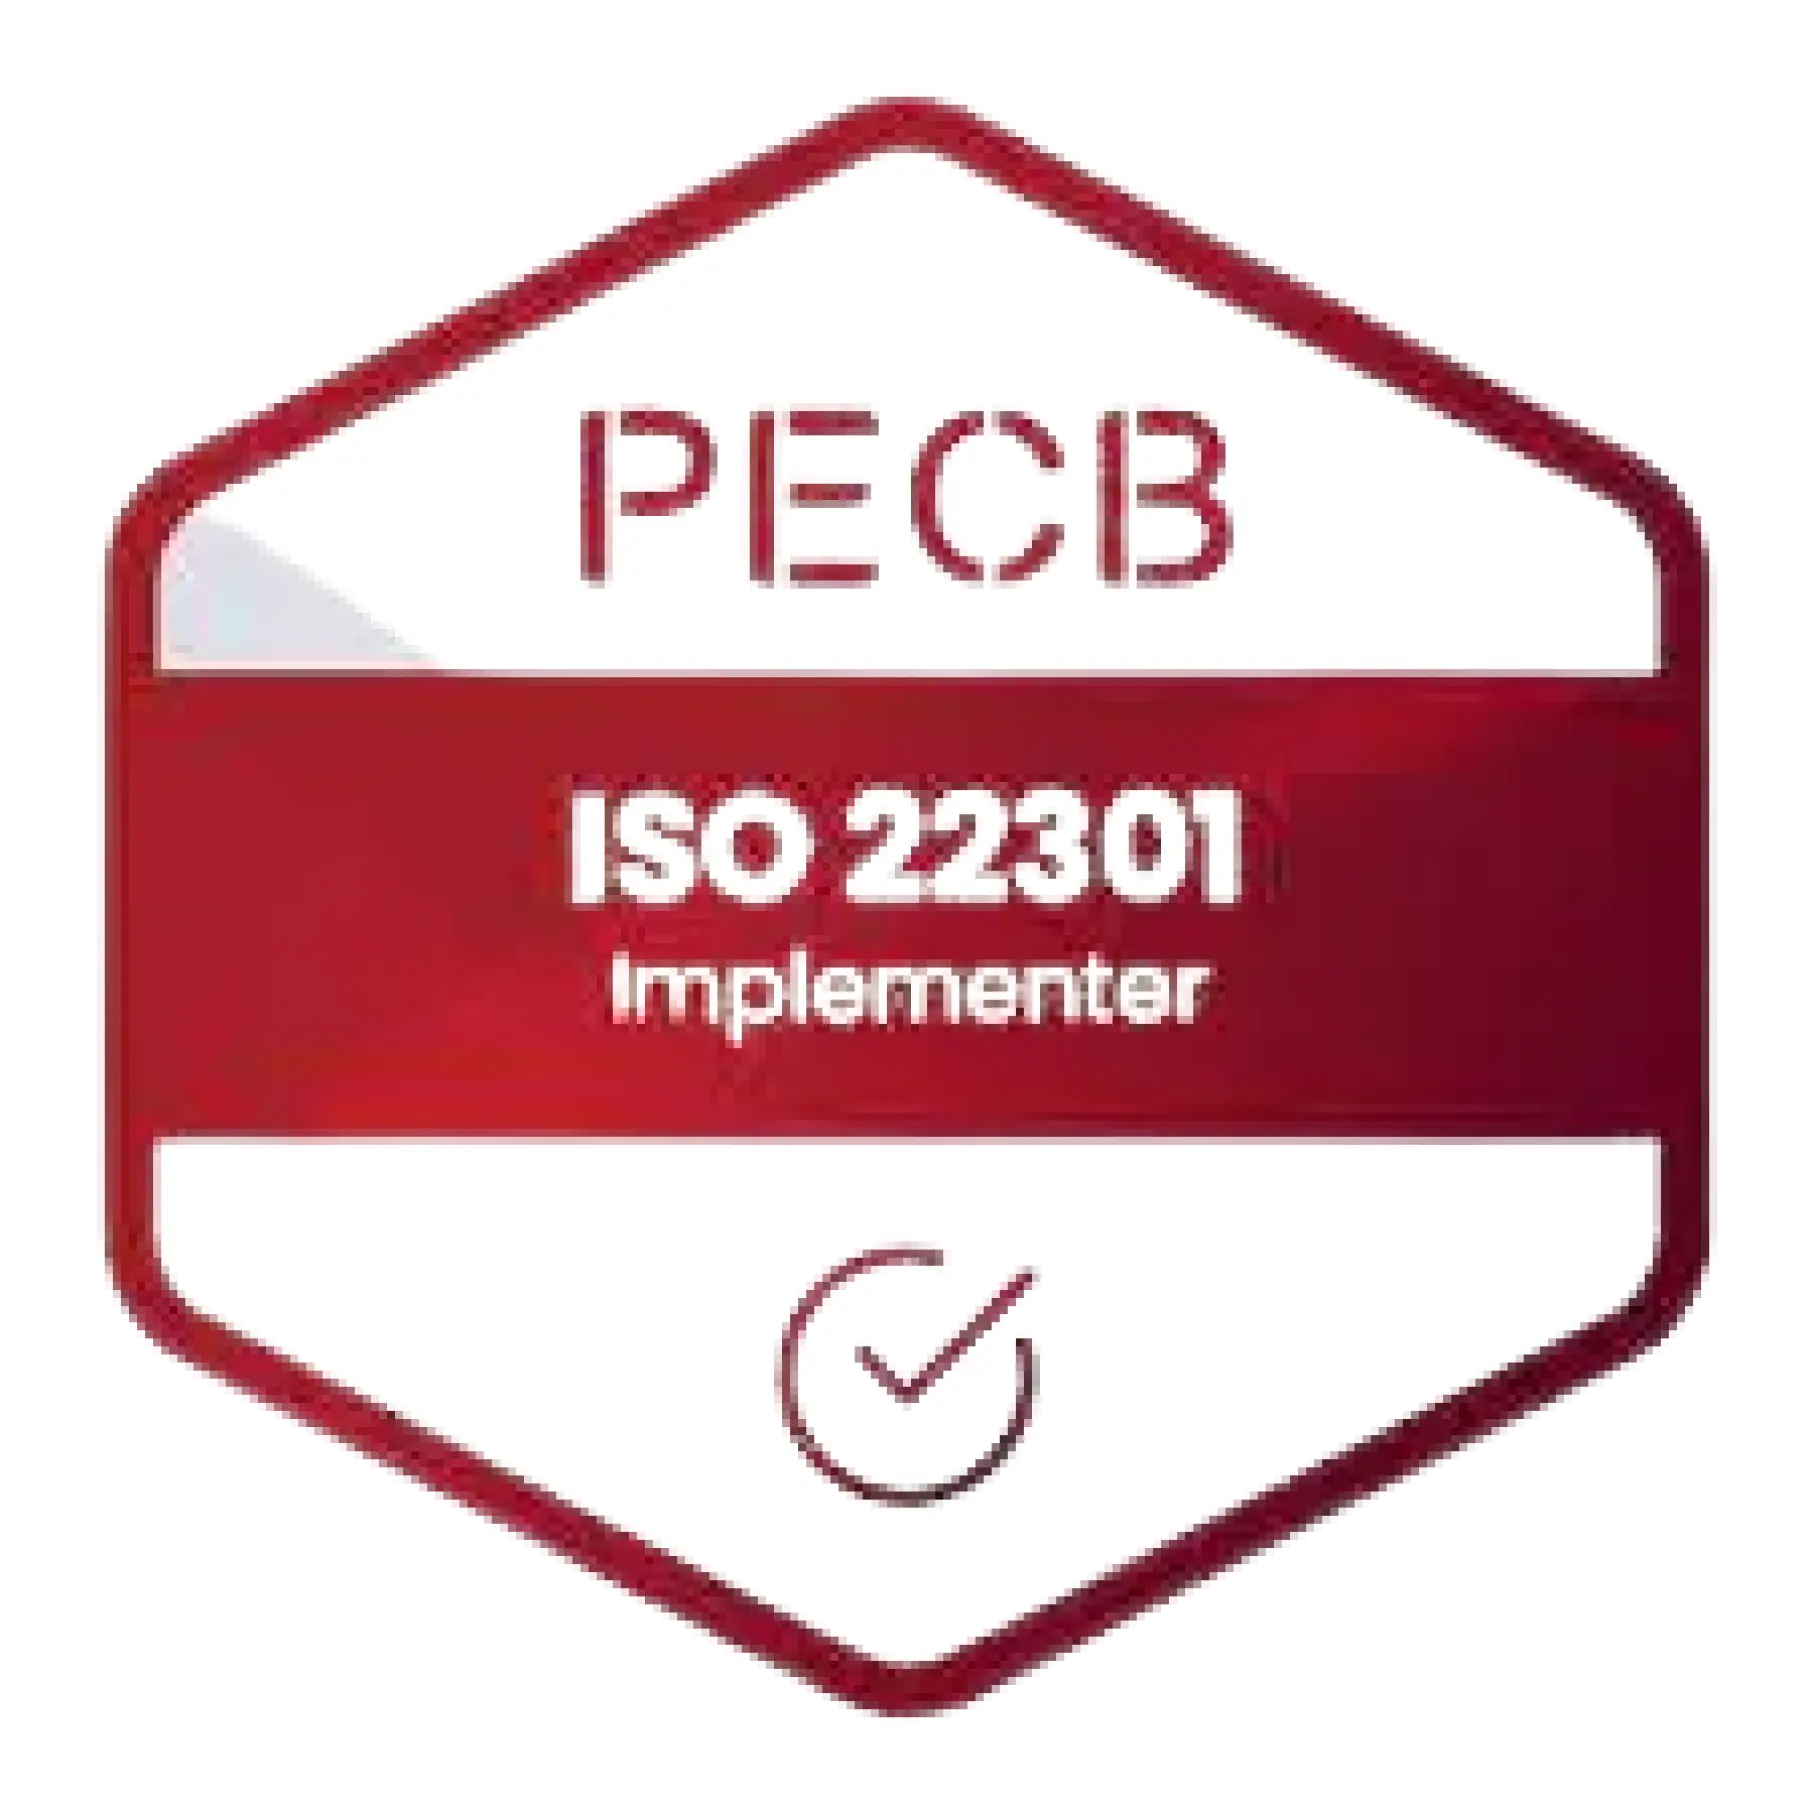 Certificeret ISO 22301 Lead Implementer badge opnået efter at have deltaget i ISO 22301 Lead Implementer kursus og eksamen